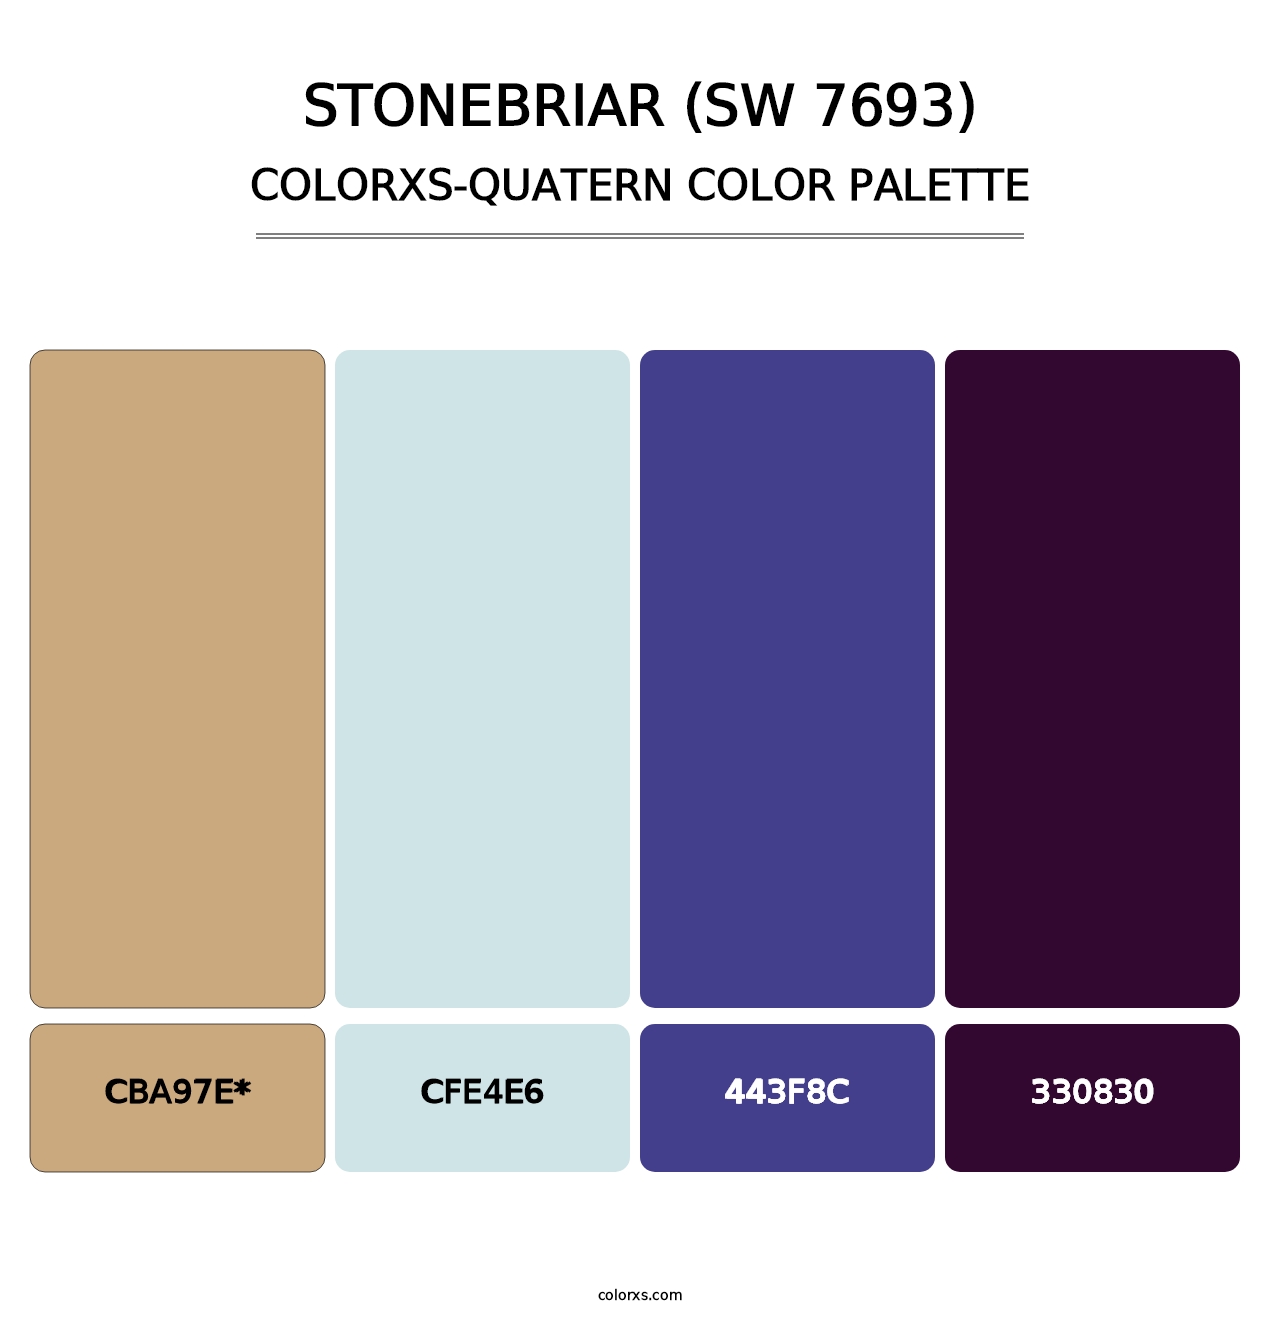 Stonebriar (SW 7693) - Colorxs Quatern Palette